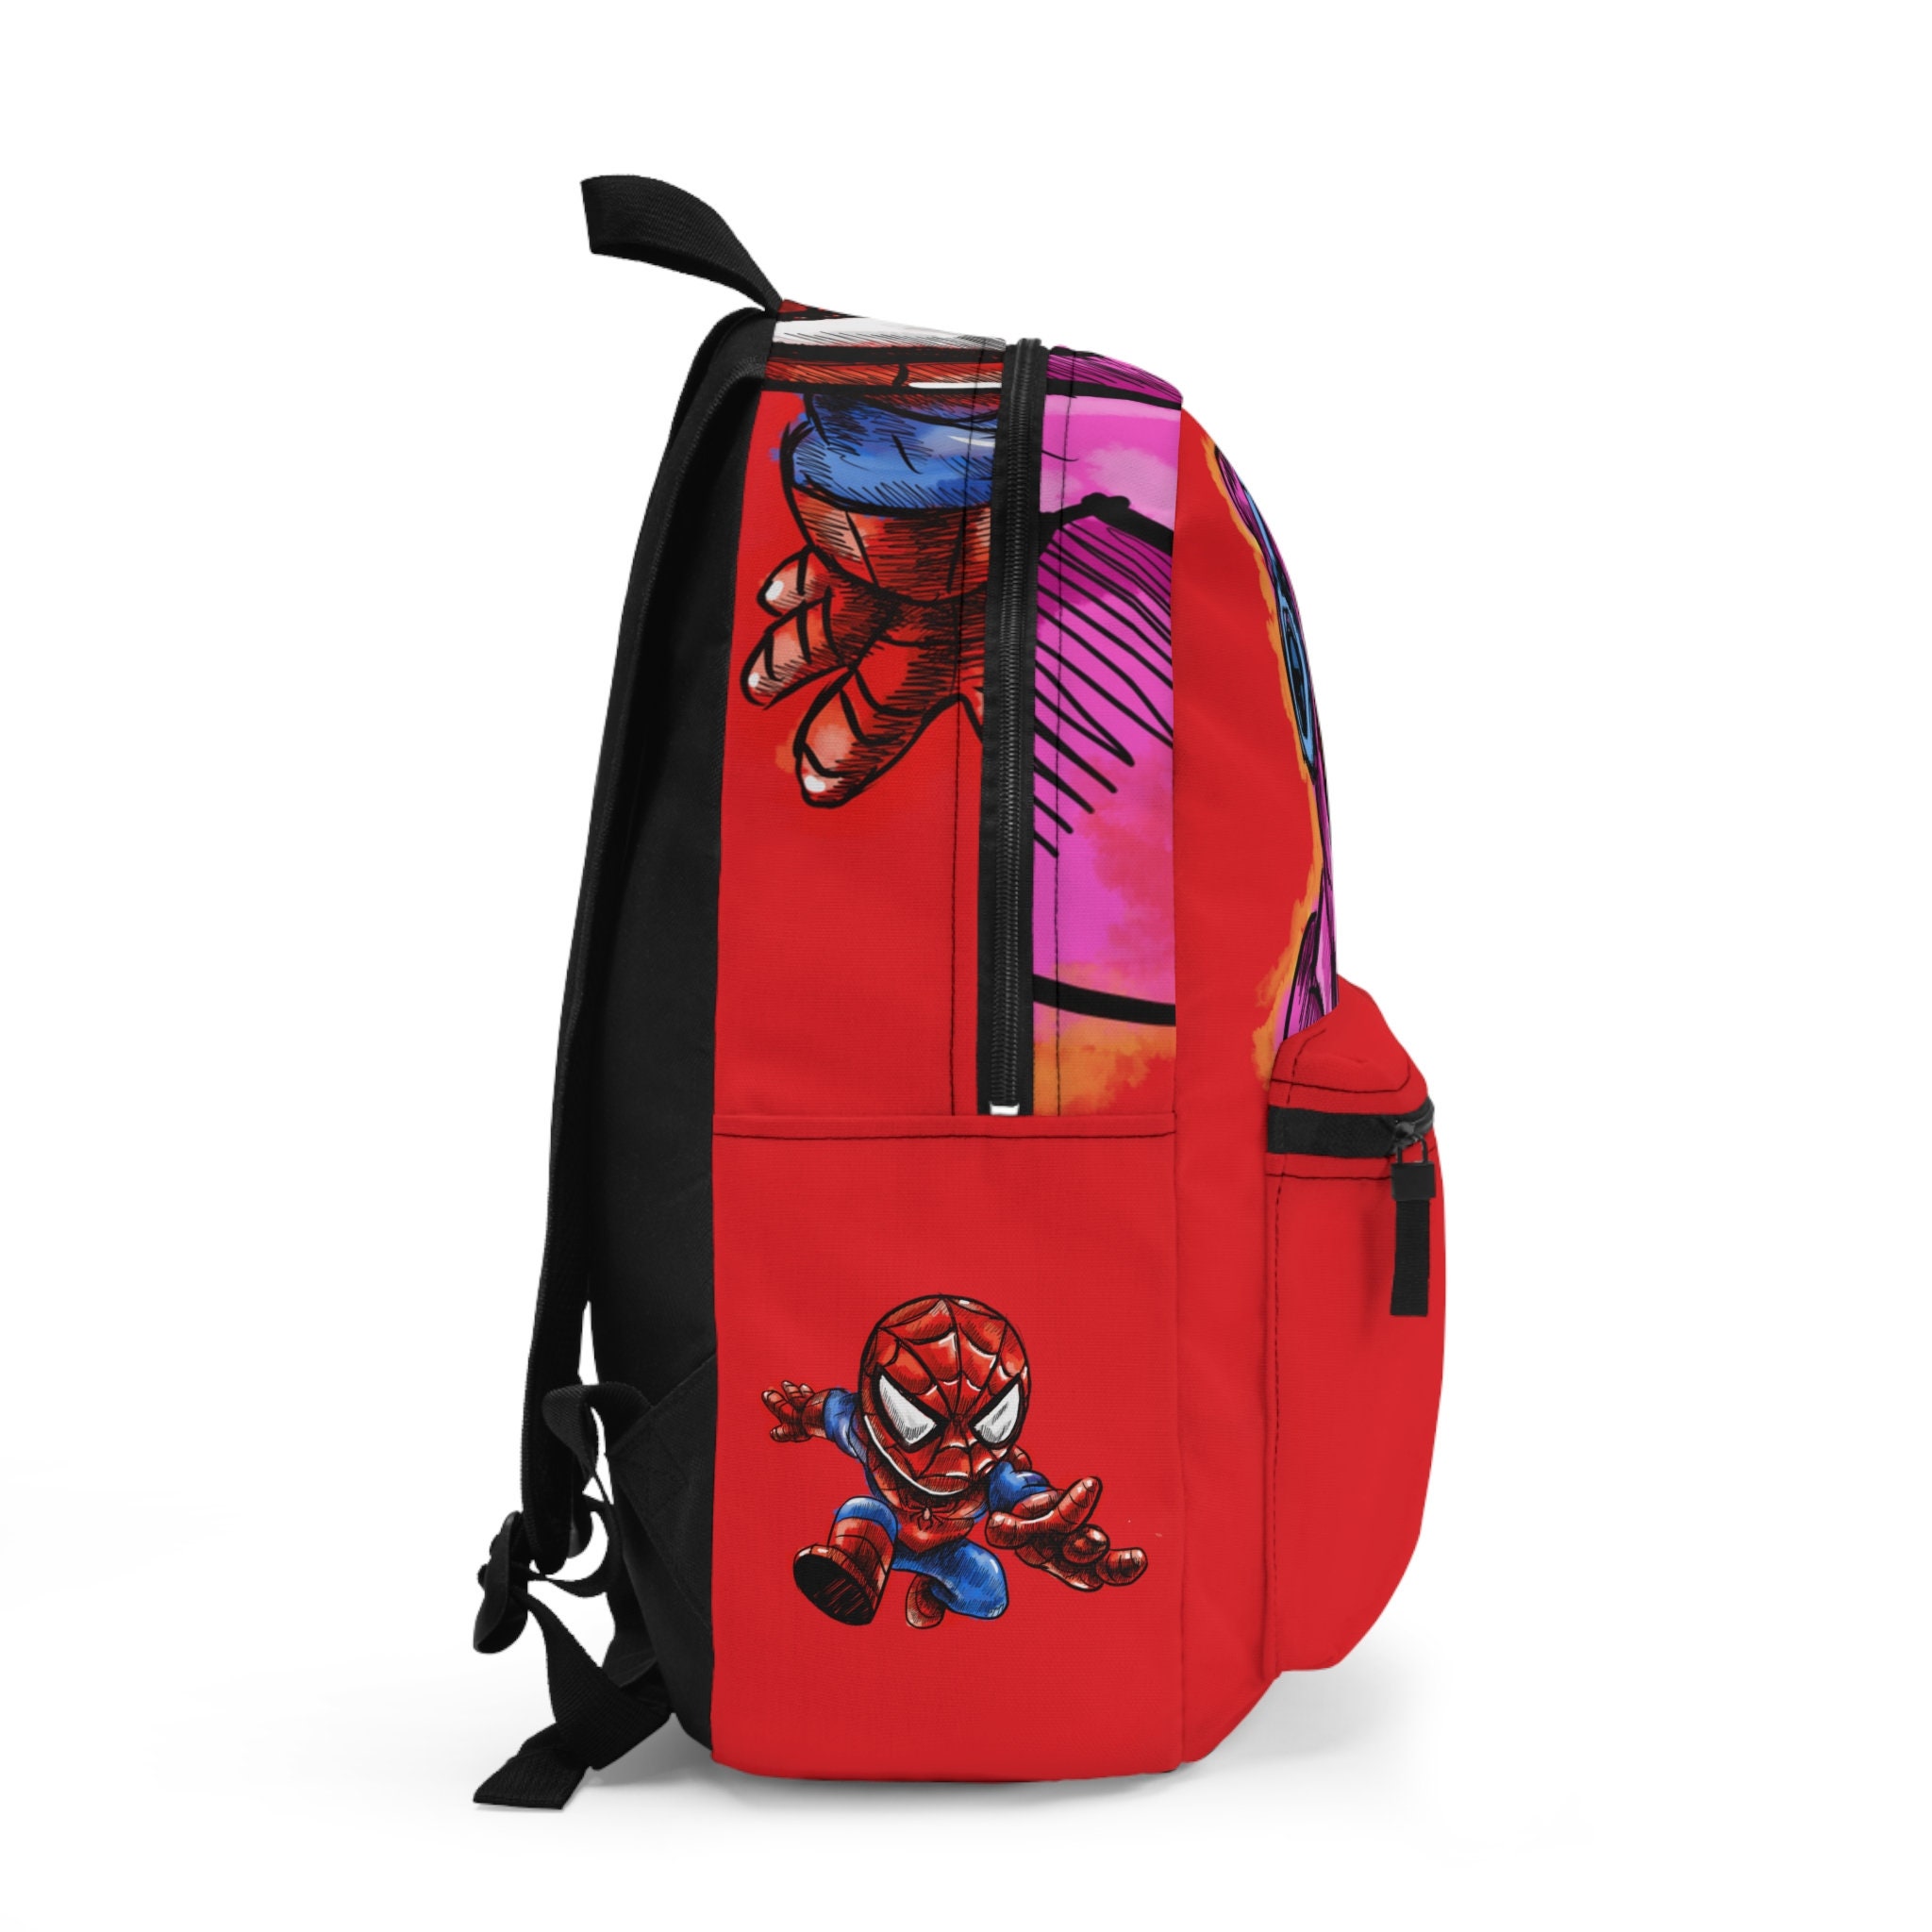 Spider Man Red Kids School Backpack, Spider man back to school Bag